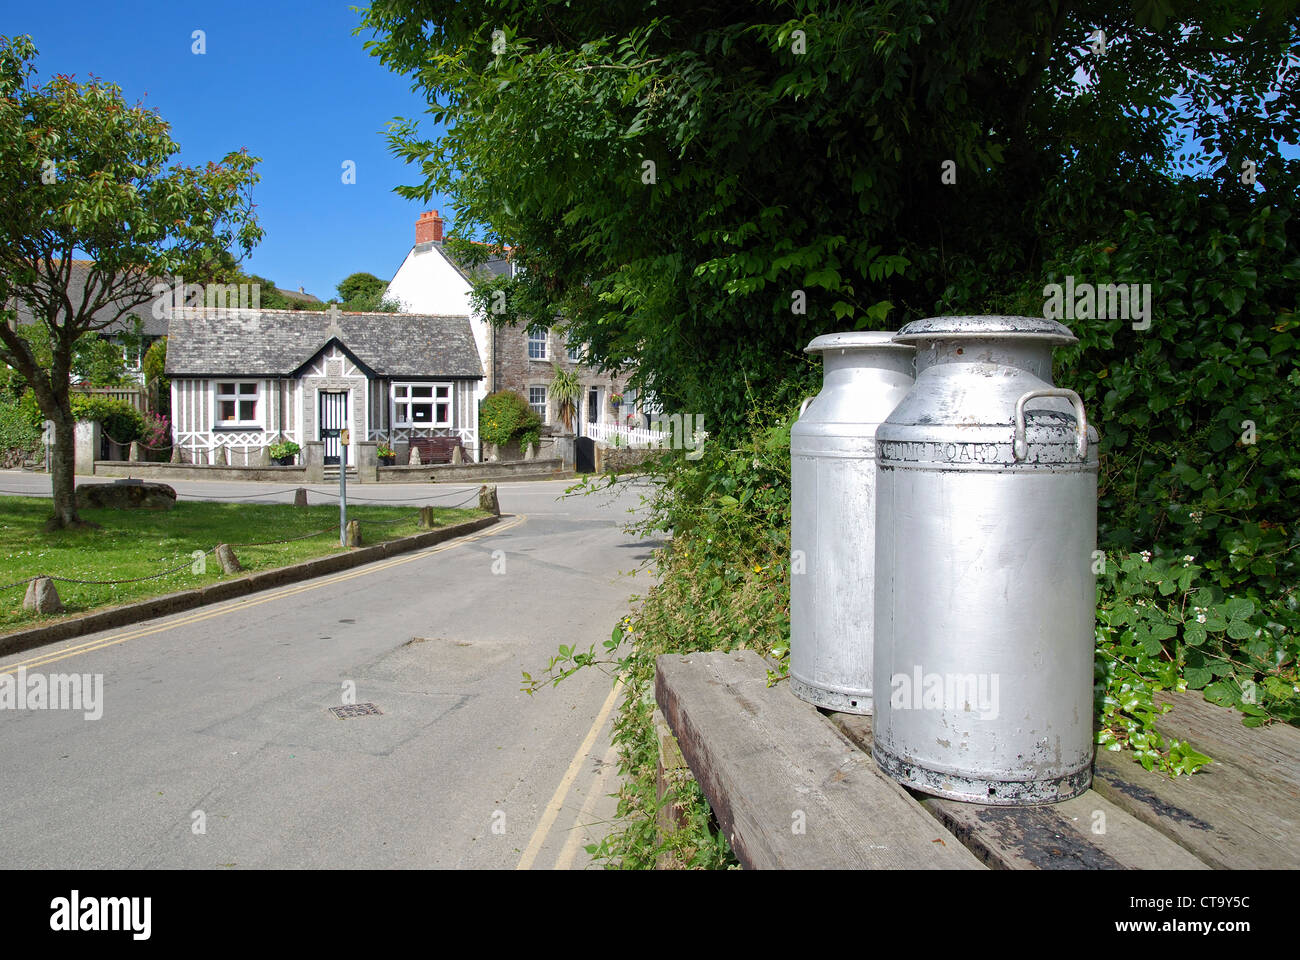 Milchkannen am Straßenrand in der Ortschaft Crantock in Cornwall, Großbritannien Stockfoto